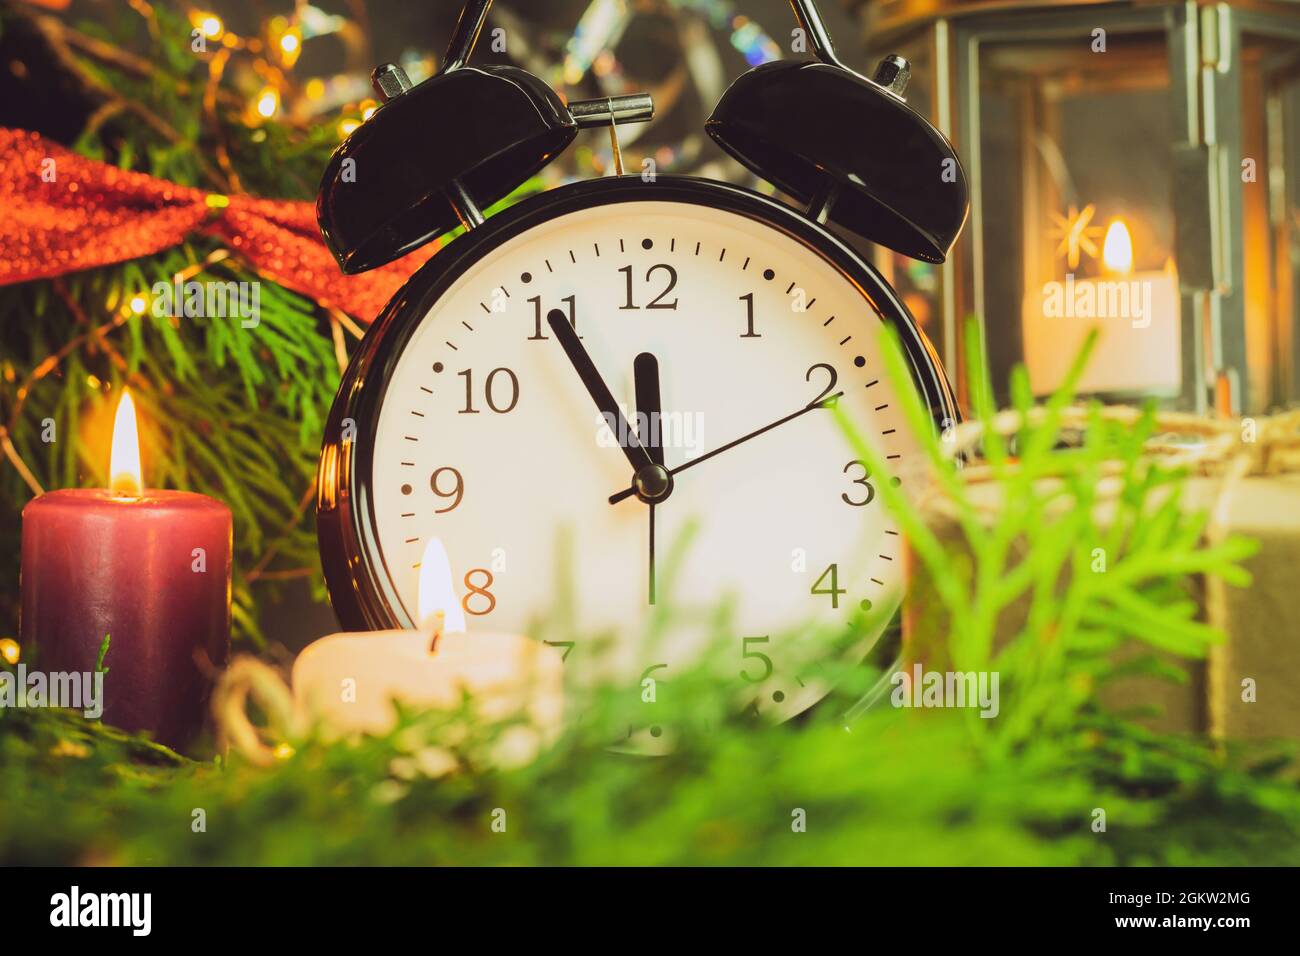 Une horloge dans les décorations du nouvel an est enveloppée de branches d'épinette et de lumières colorées. L'horloge indique l'heure : de cinq minutes à minuit. Arrière-plan W Banque D'Images